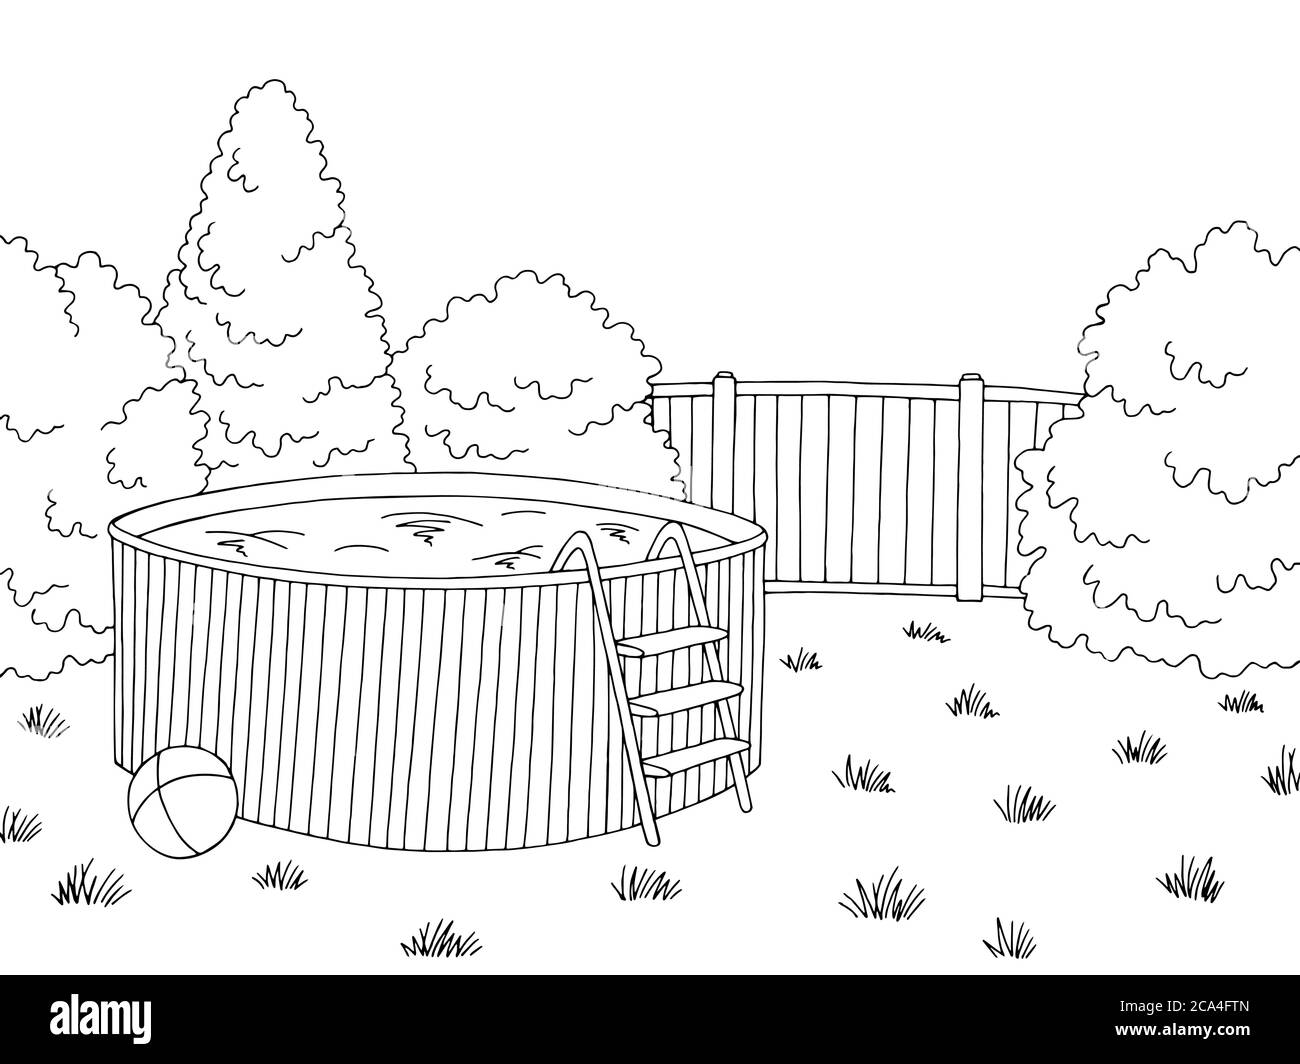 Garten Schwimmbad Grafik schwarz weiß Landschaft Skizze Illustration Vektor Stock Vektor